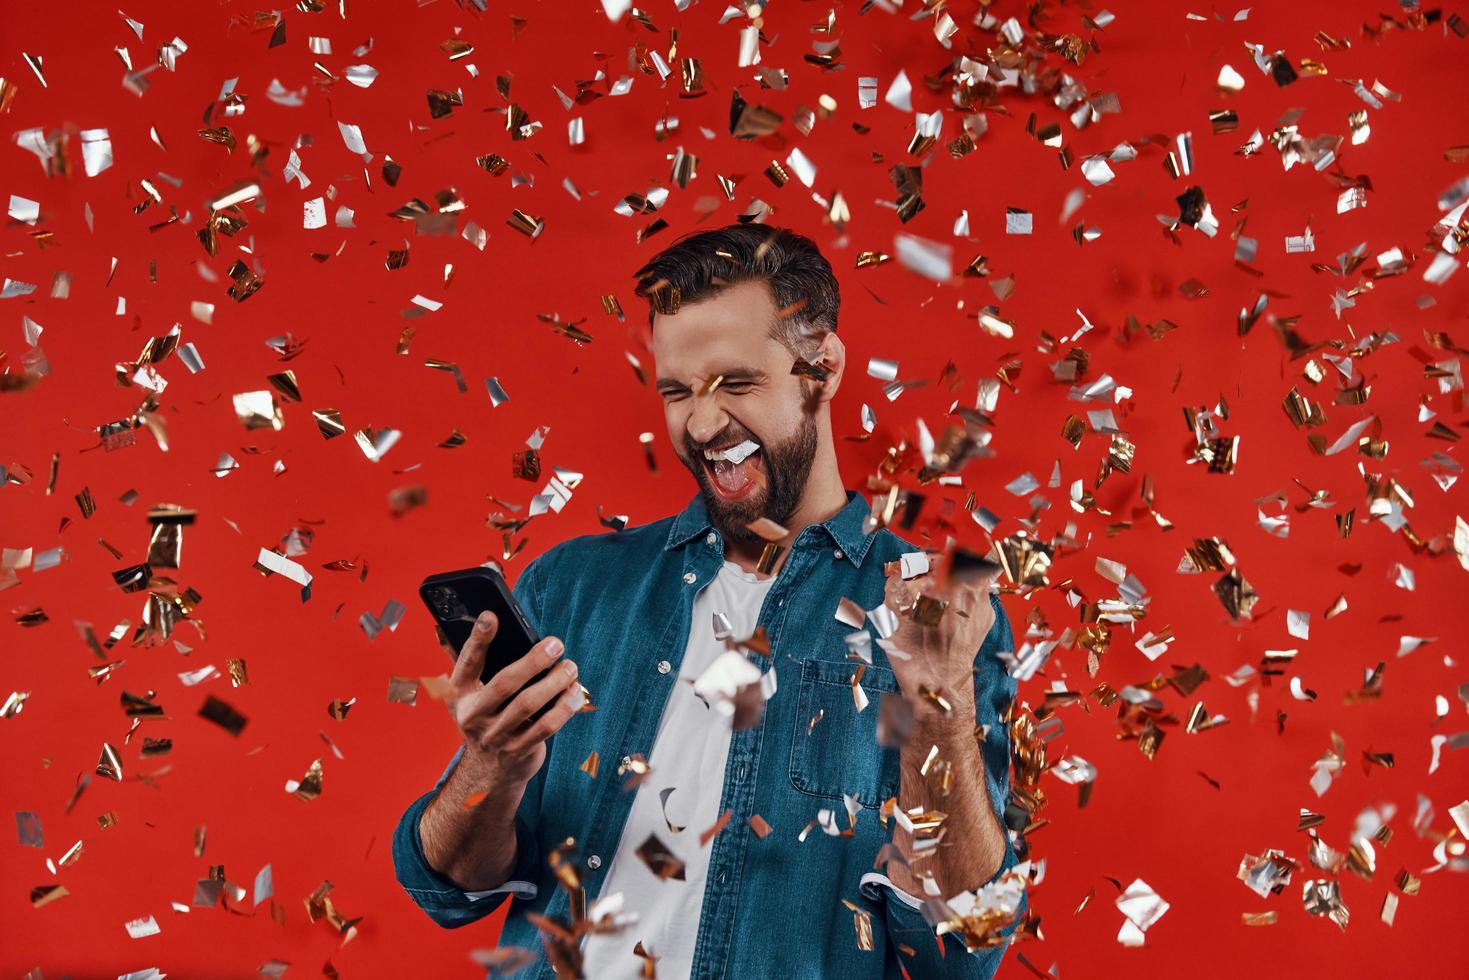 jovem feliz em roupas casuais, segurando o telefone inteligente e gesticulando em pé contra um fundo vermelho com confete voando ao redor foto